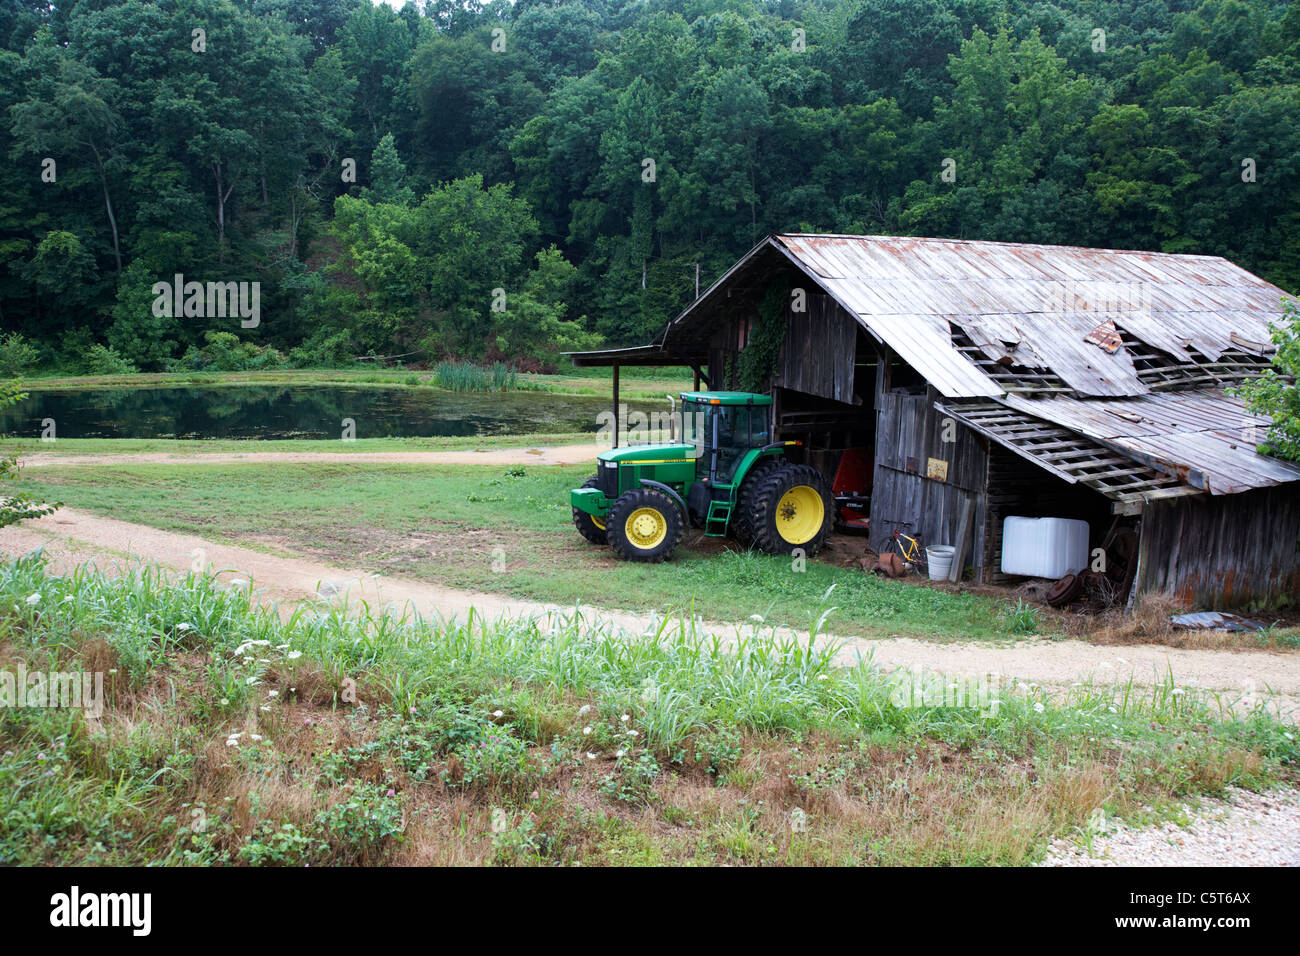 Traktor in alten abgenutzten angeschlagenen traditionellen Bauernhof Gebäude in Lichtung im Wald Hurrikan Mühlen Tennessee usa Stockfoto